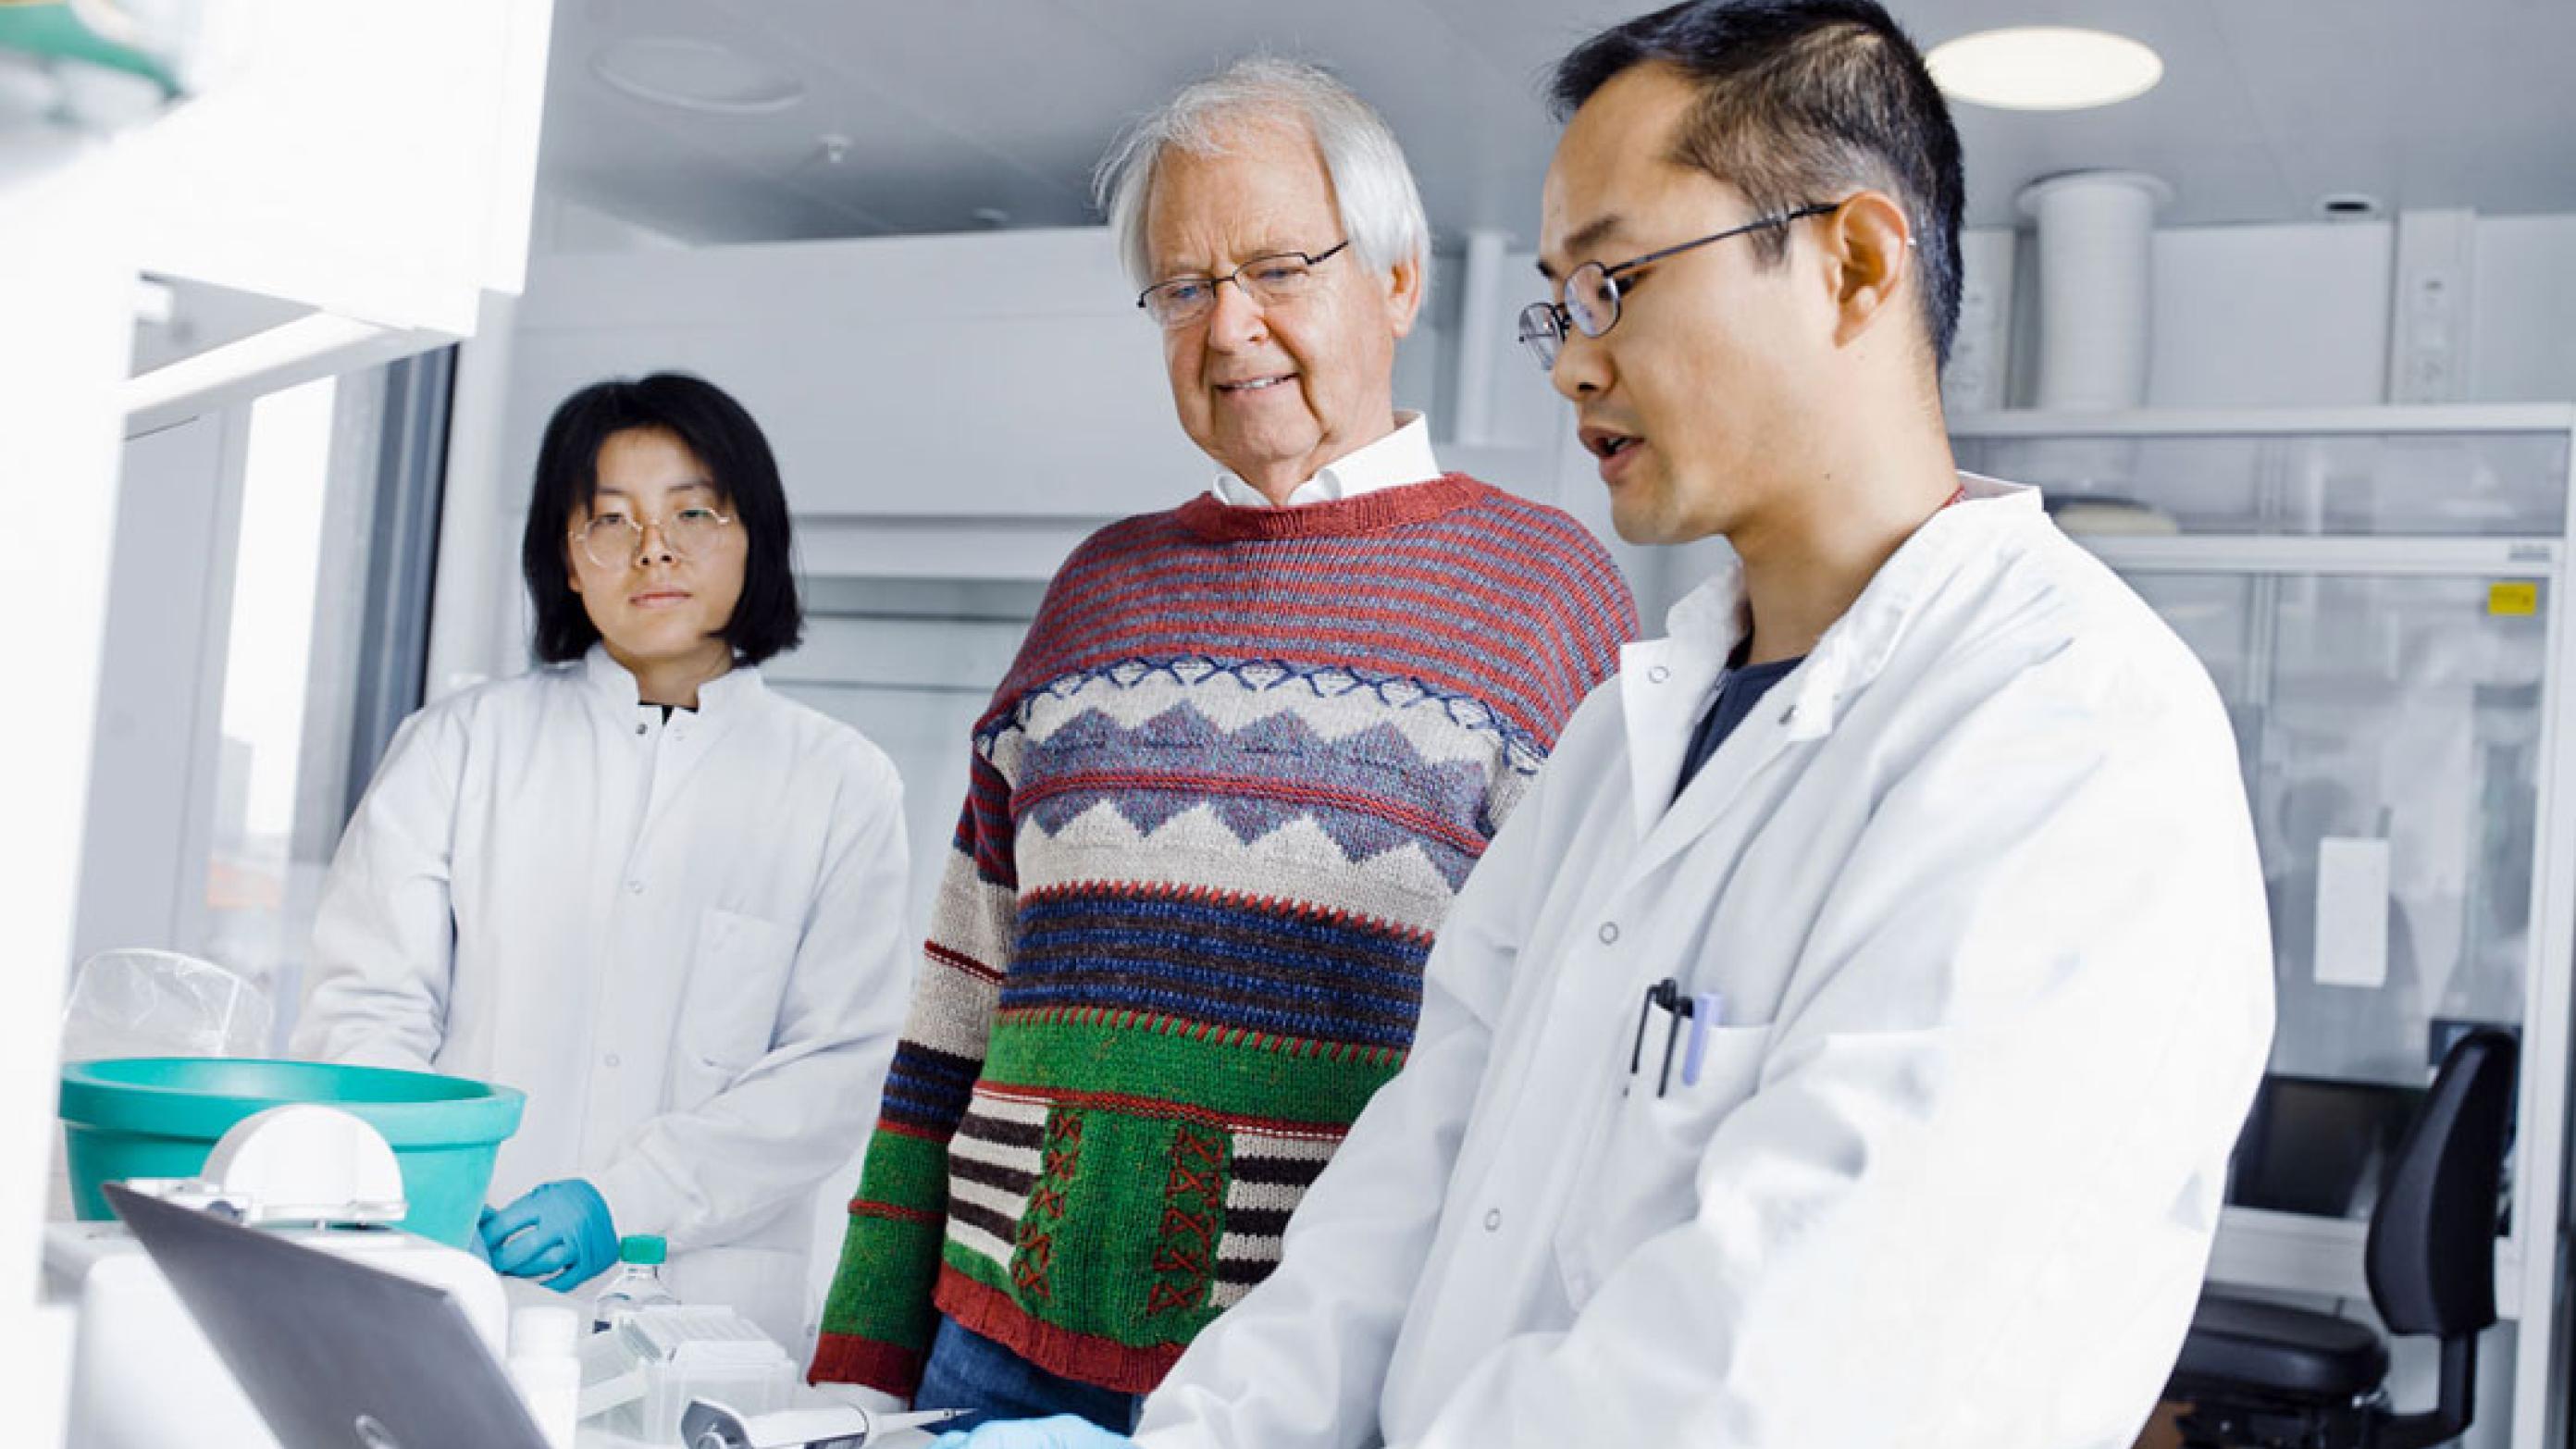 Oluf Borbye Pedersen med postdoc Yong Fan og hans hustru Liwei Lyu, ph.d.-studerende. Yong Fan forsker i to polypeptidhormoner, der dannes af nogle specifikke bakteriearter i tarmen hos raske mennesker. Foto: Claus Boesen.